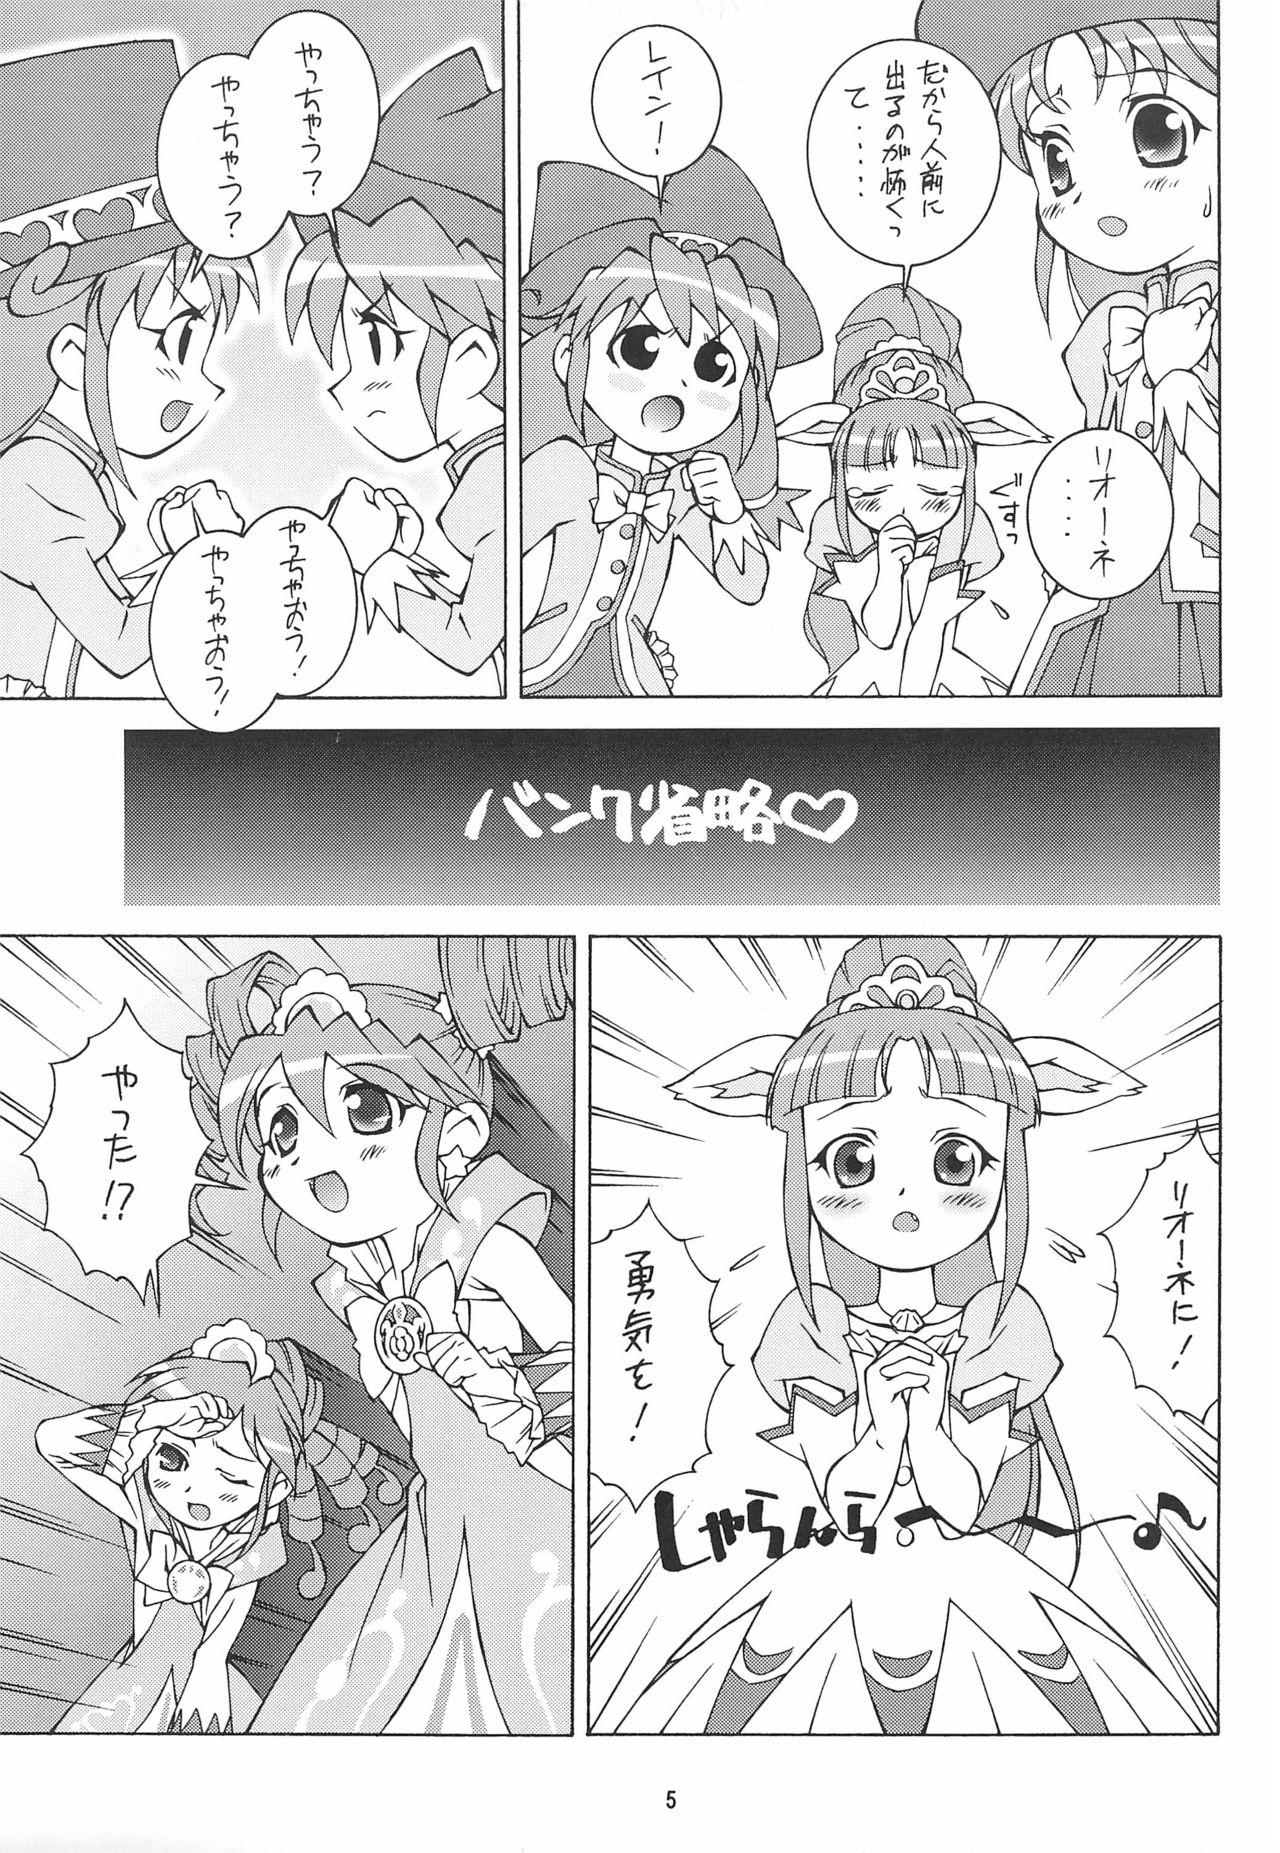 Peeing Fushigiboshi no Kemono no Hime - Fushigiboshi no futagohime | twin princesses of the wonder planet Pretty - Page 5